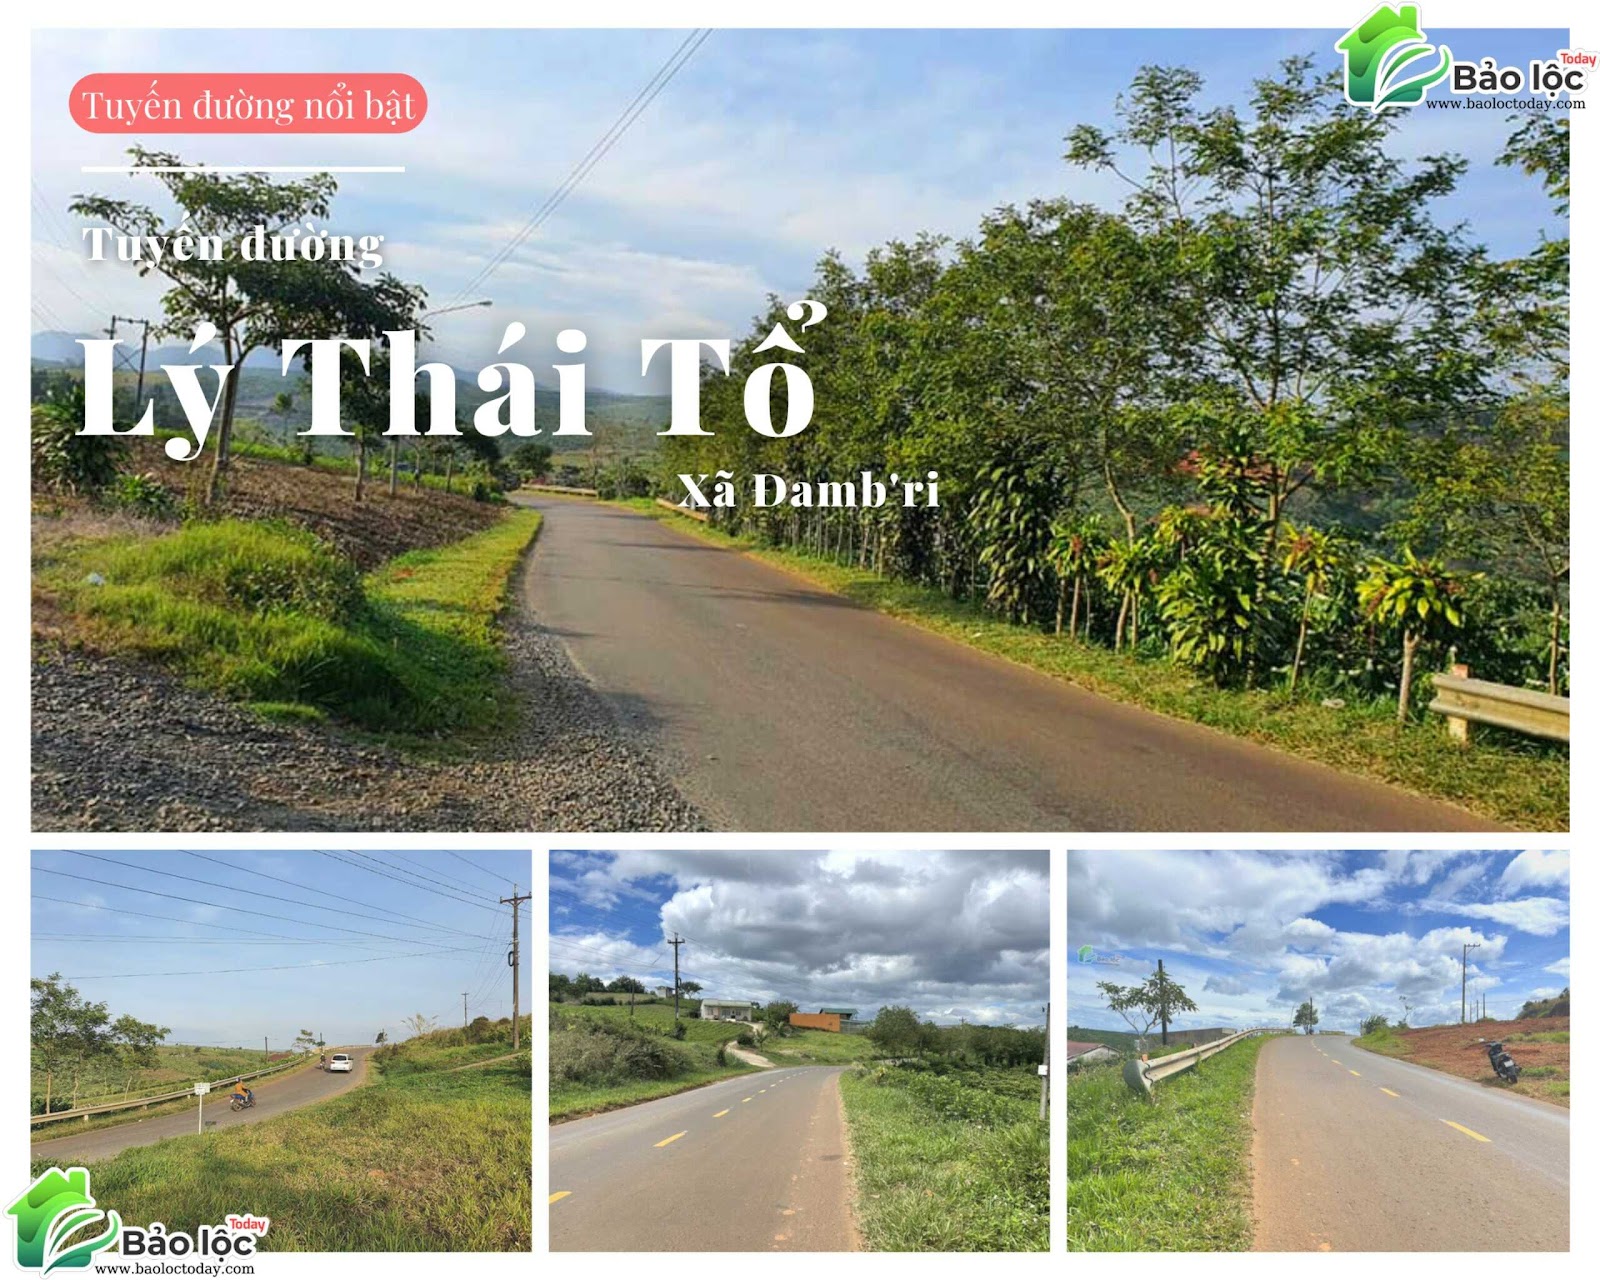 Hình ảnh tuyến đường Lý Thái Tổ, xã Đambri, thành phố Bảo Lộc, tỉnh Lâm Đồng